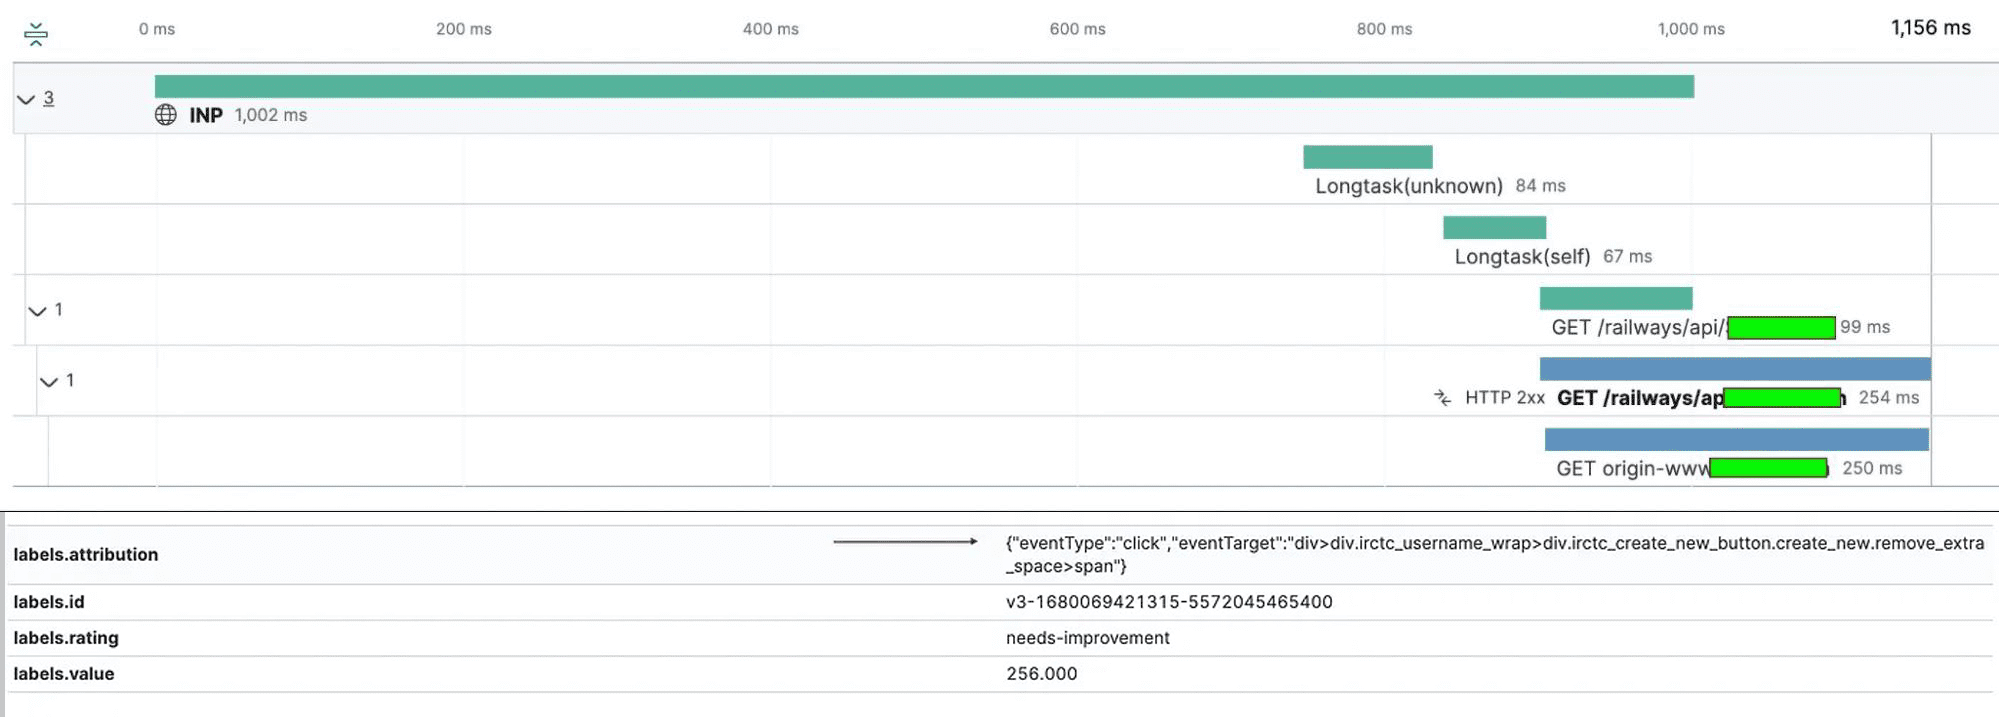 Analiz için INP değerlerini raporlayan ELK günlük kaydı sisteminin ekran görüntüsü.